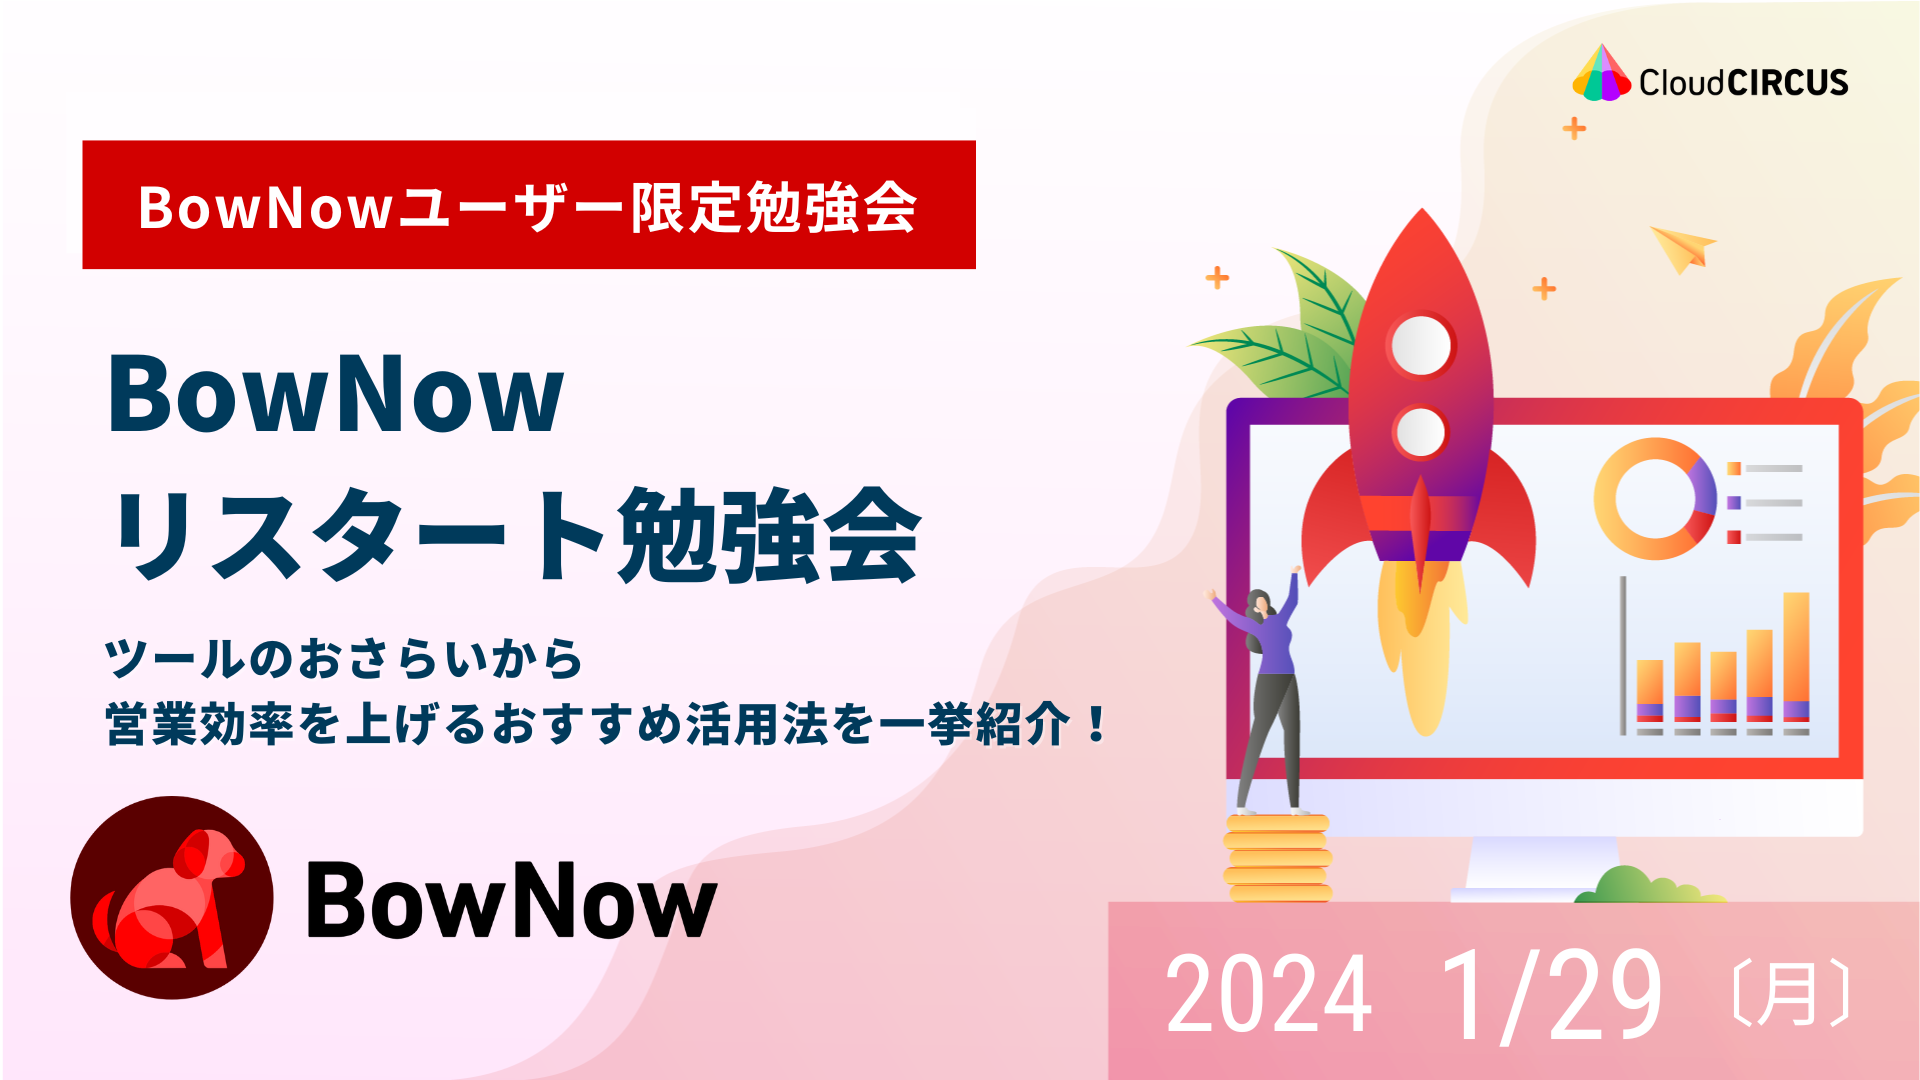 【1月29日(月)】BowNowリスタート勉強会